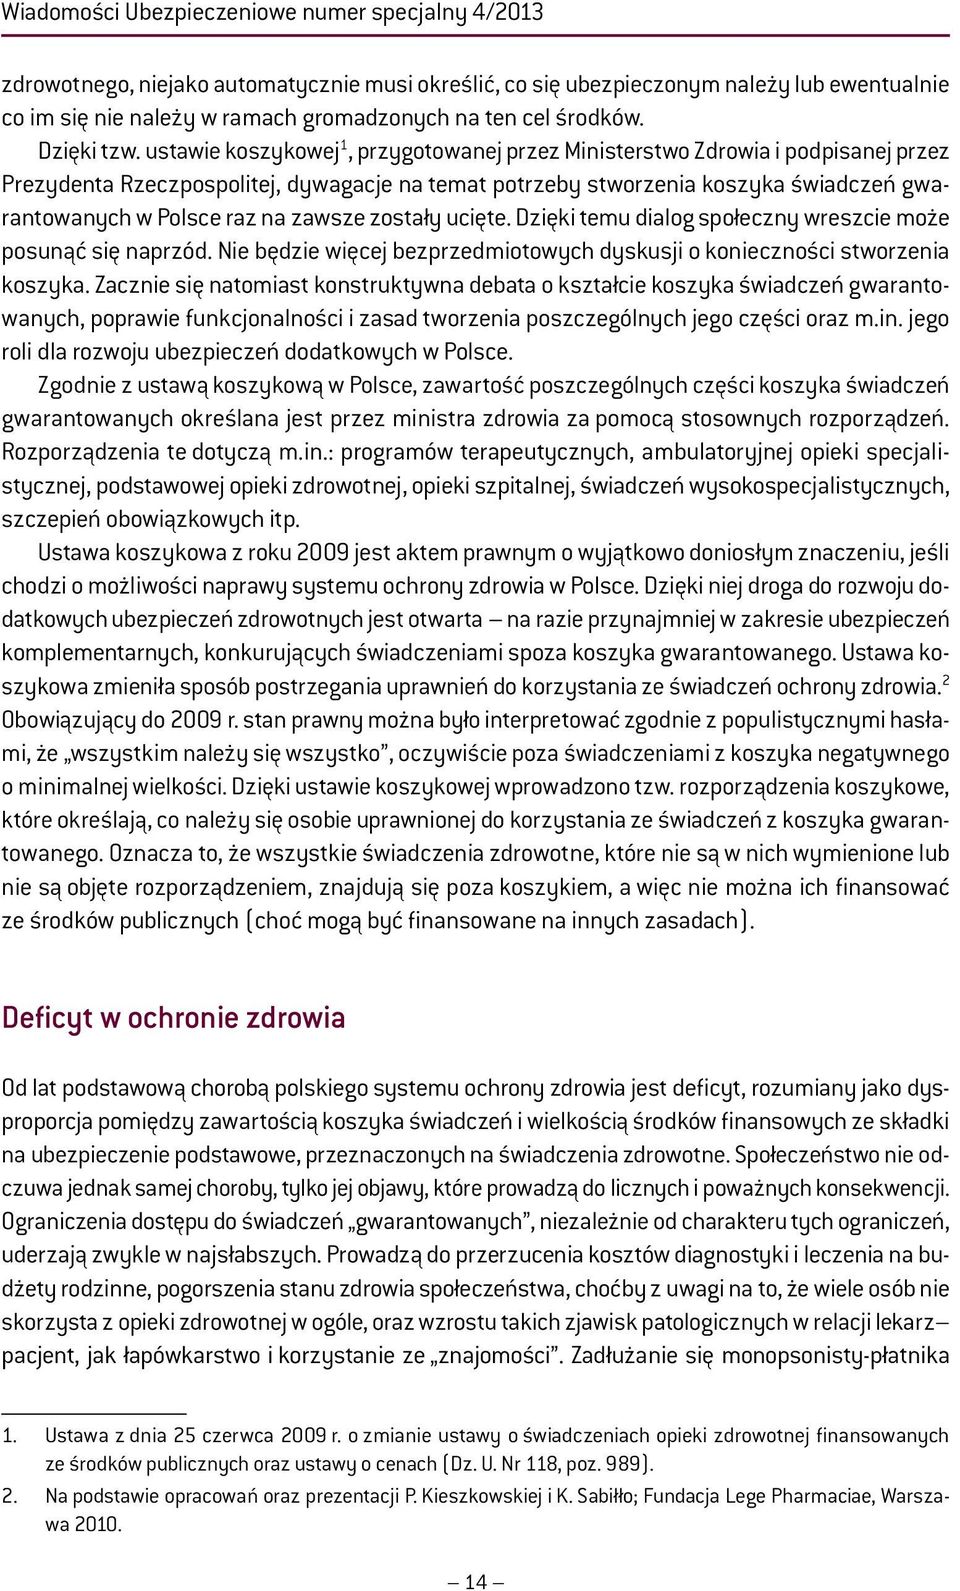 ustawie koszykowej 1, przygotowanej przez Ministerstwo Zdrowia i podpisanej przez Prezydenta Rzeczpospolitej, dywagacje na temat potrzeby stworzenia koszyka świadczeń gwarantowanych w Polsce raz na